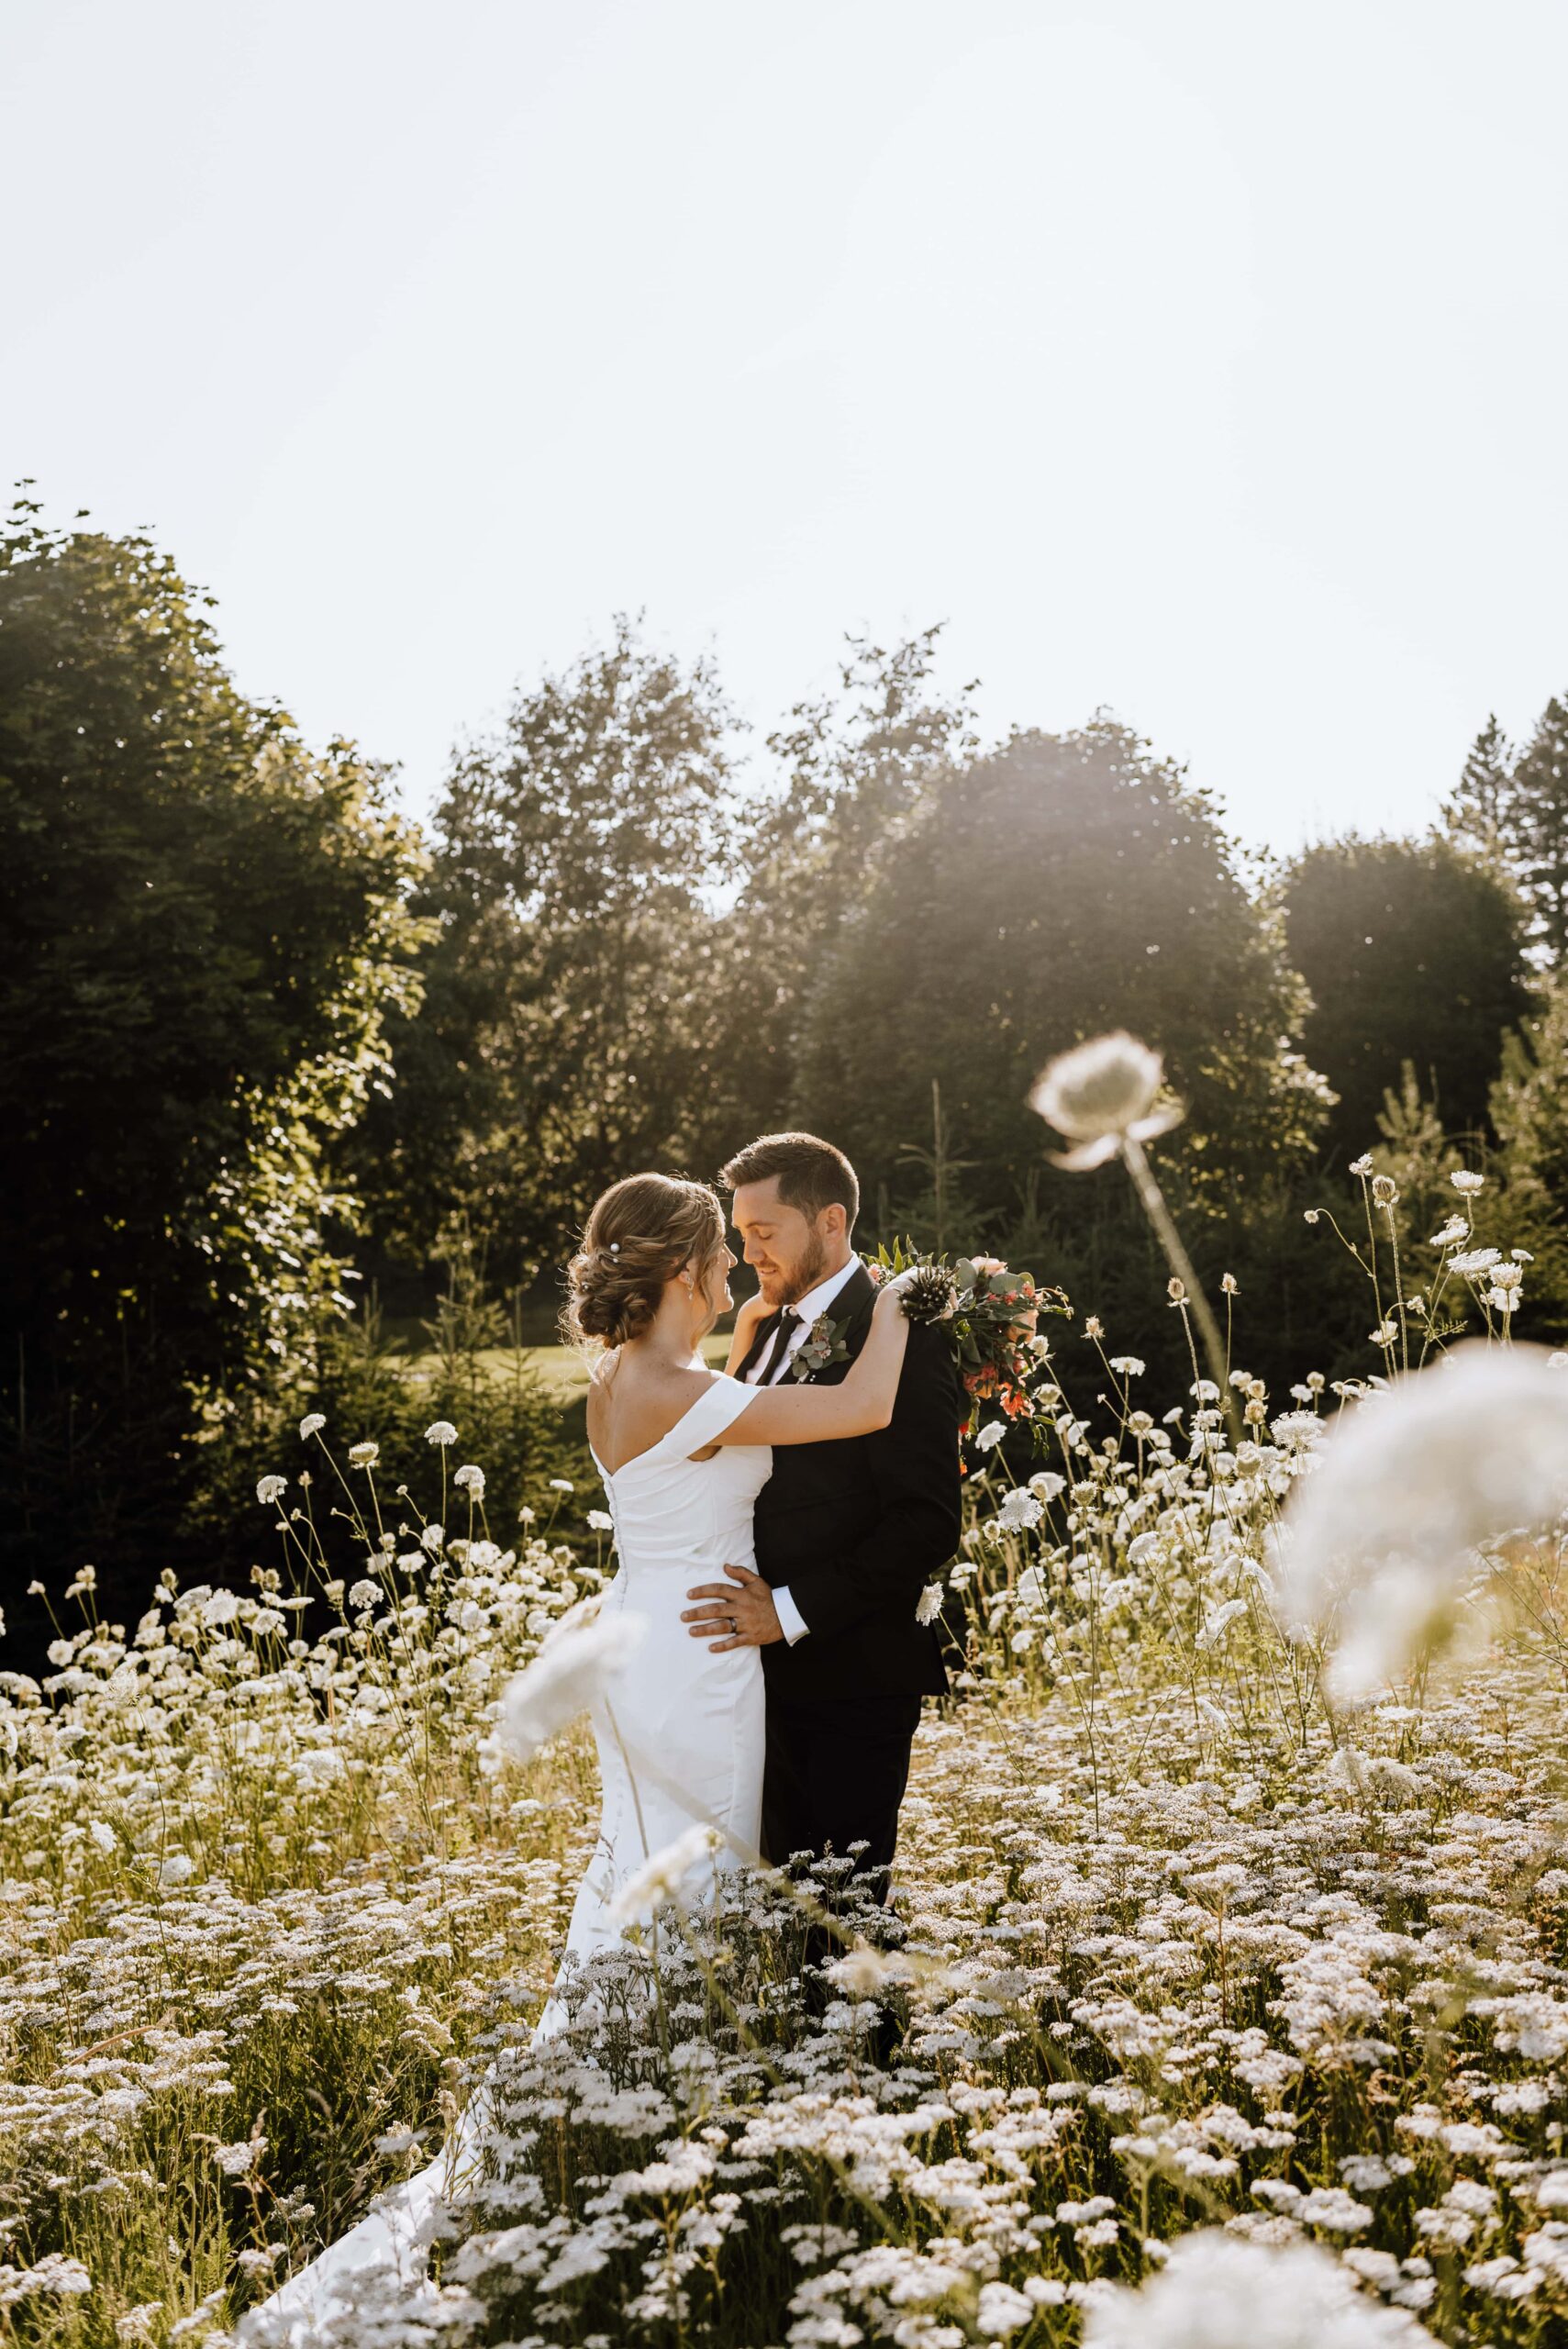 PEI wedding photographer - Michaela Bell Photography 